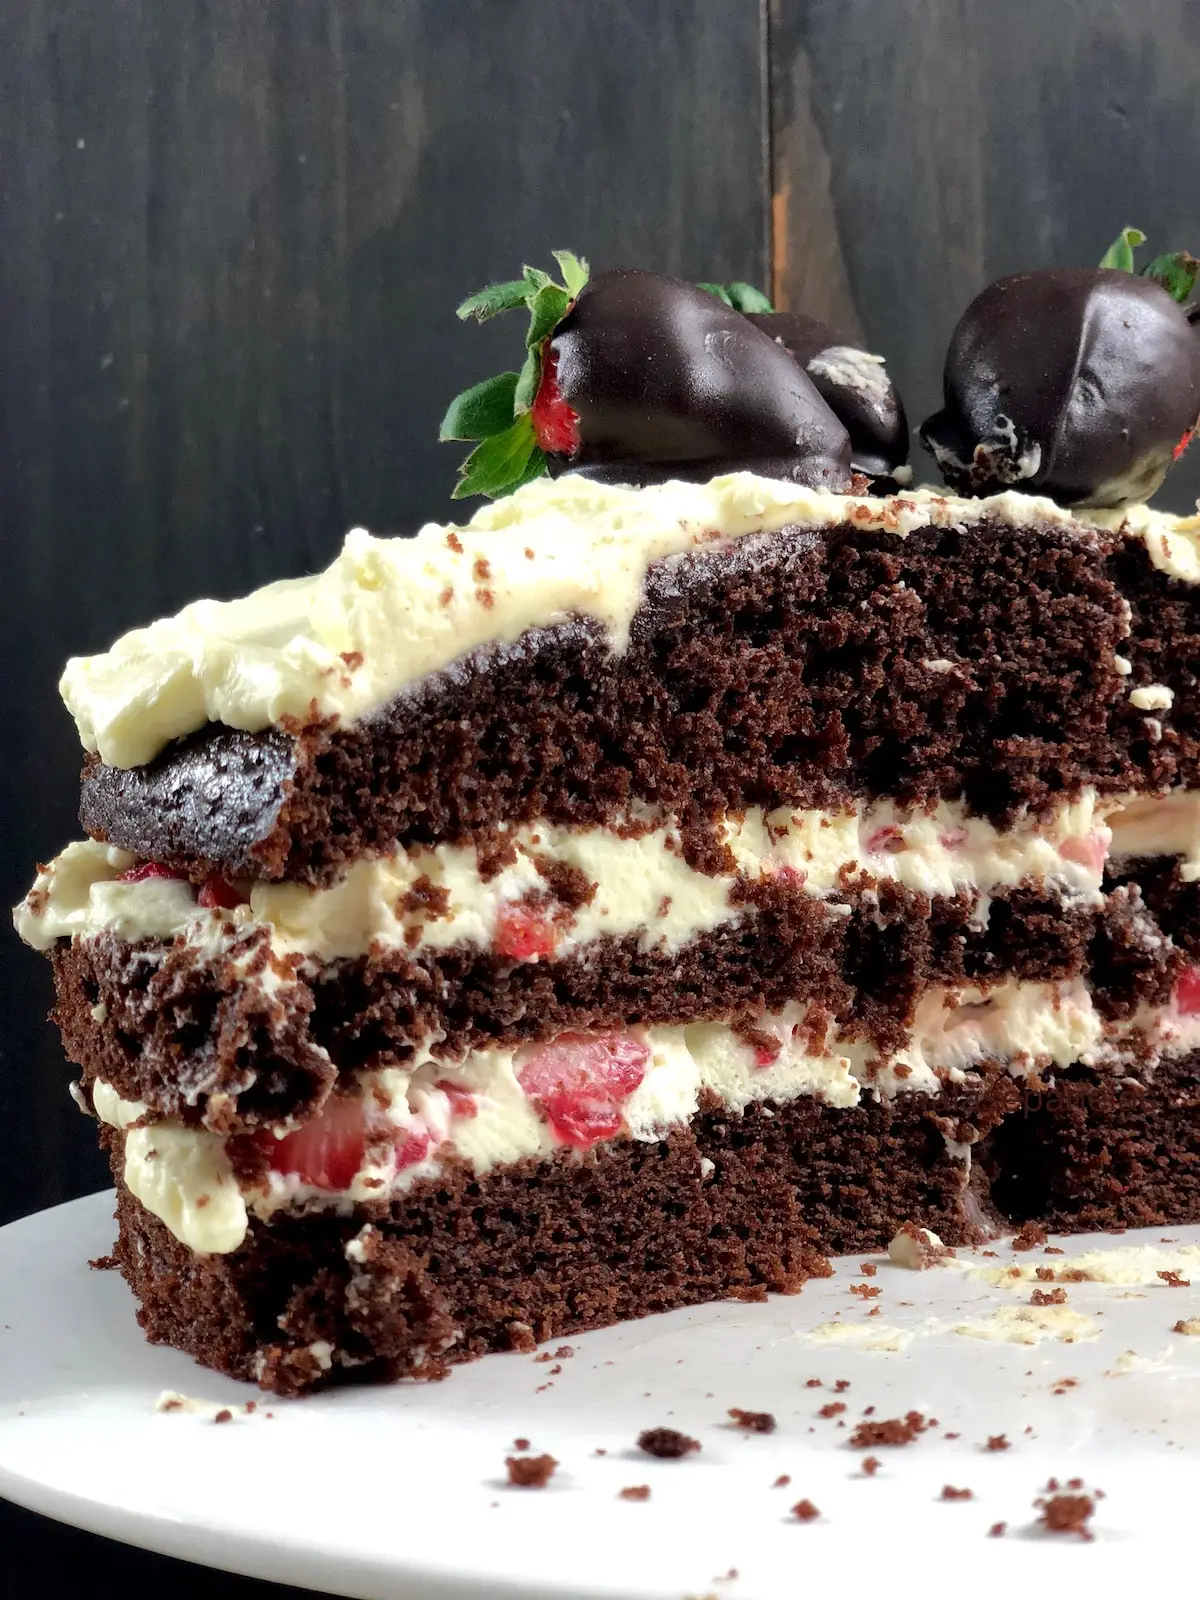 Imagem mostrando detalhe da parte interna de bolo de chocolate recheado com pedaços de morangos e chantilly